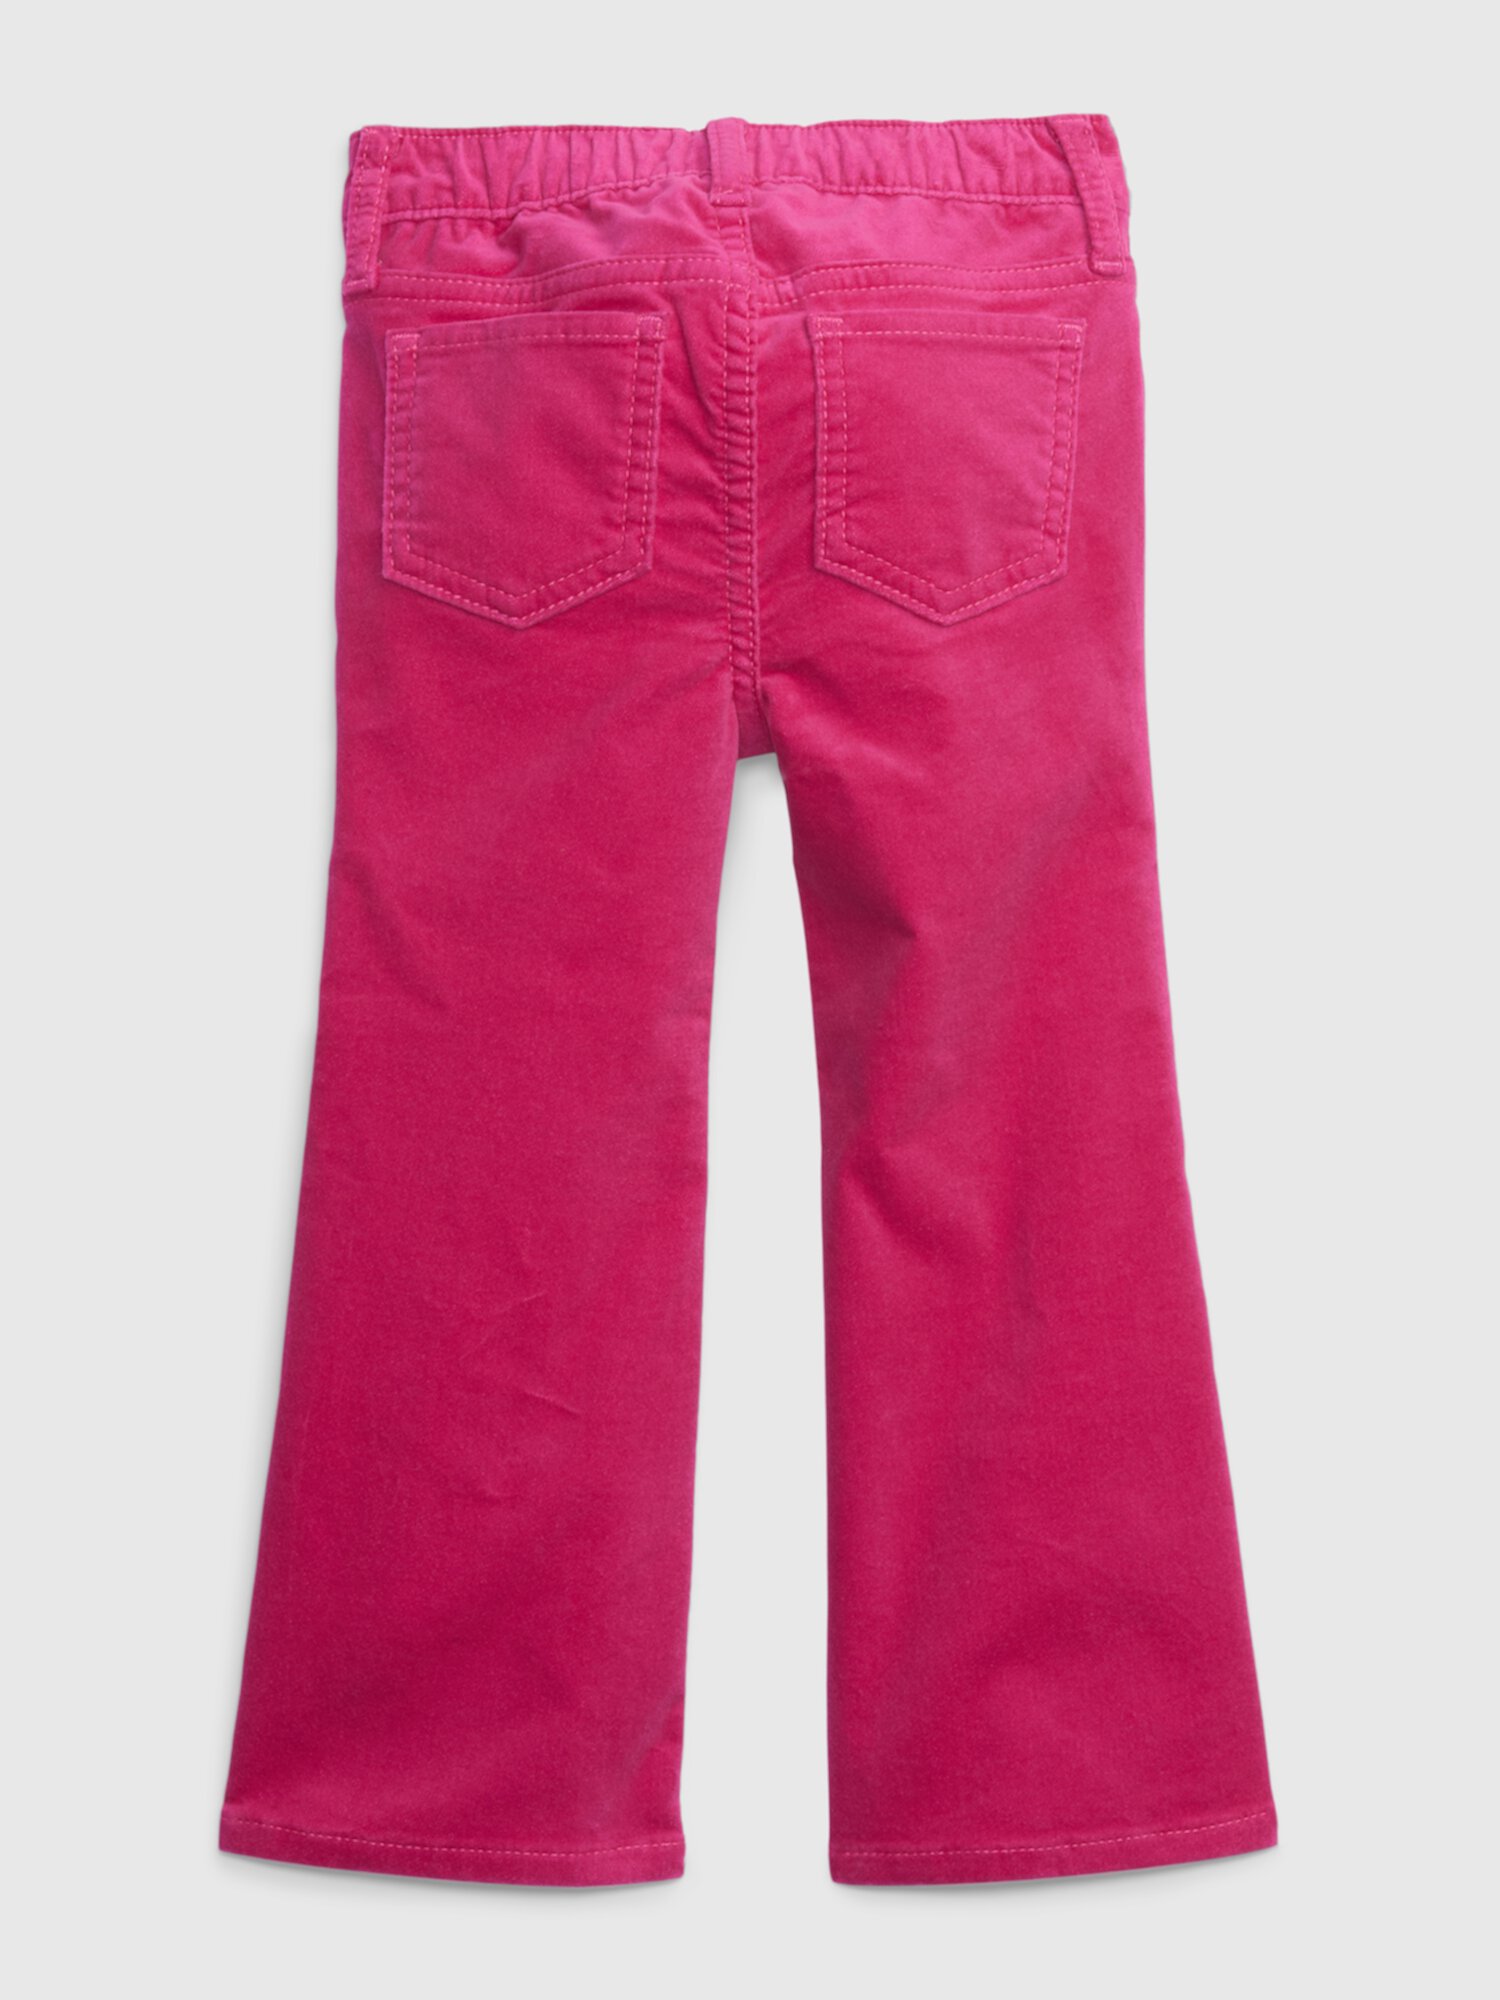 Бархатные расклешенные джинсы для малышей с тканью Washwell Gap